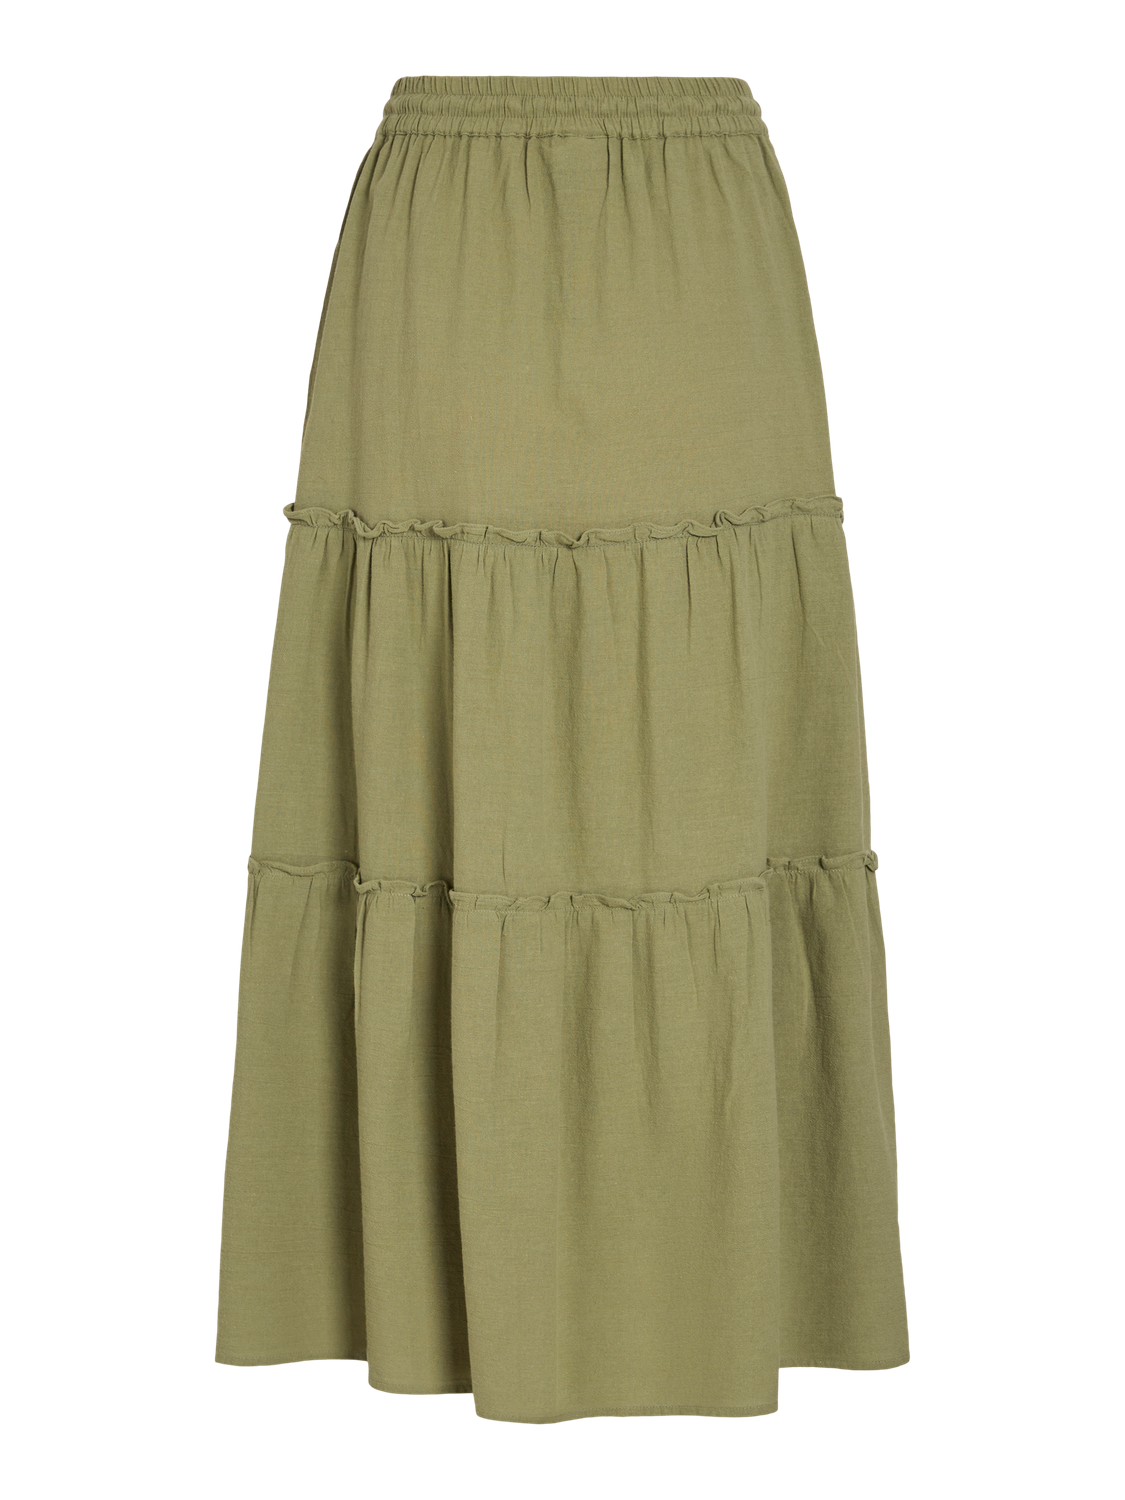 VIANLA Skirt - Oil Green